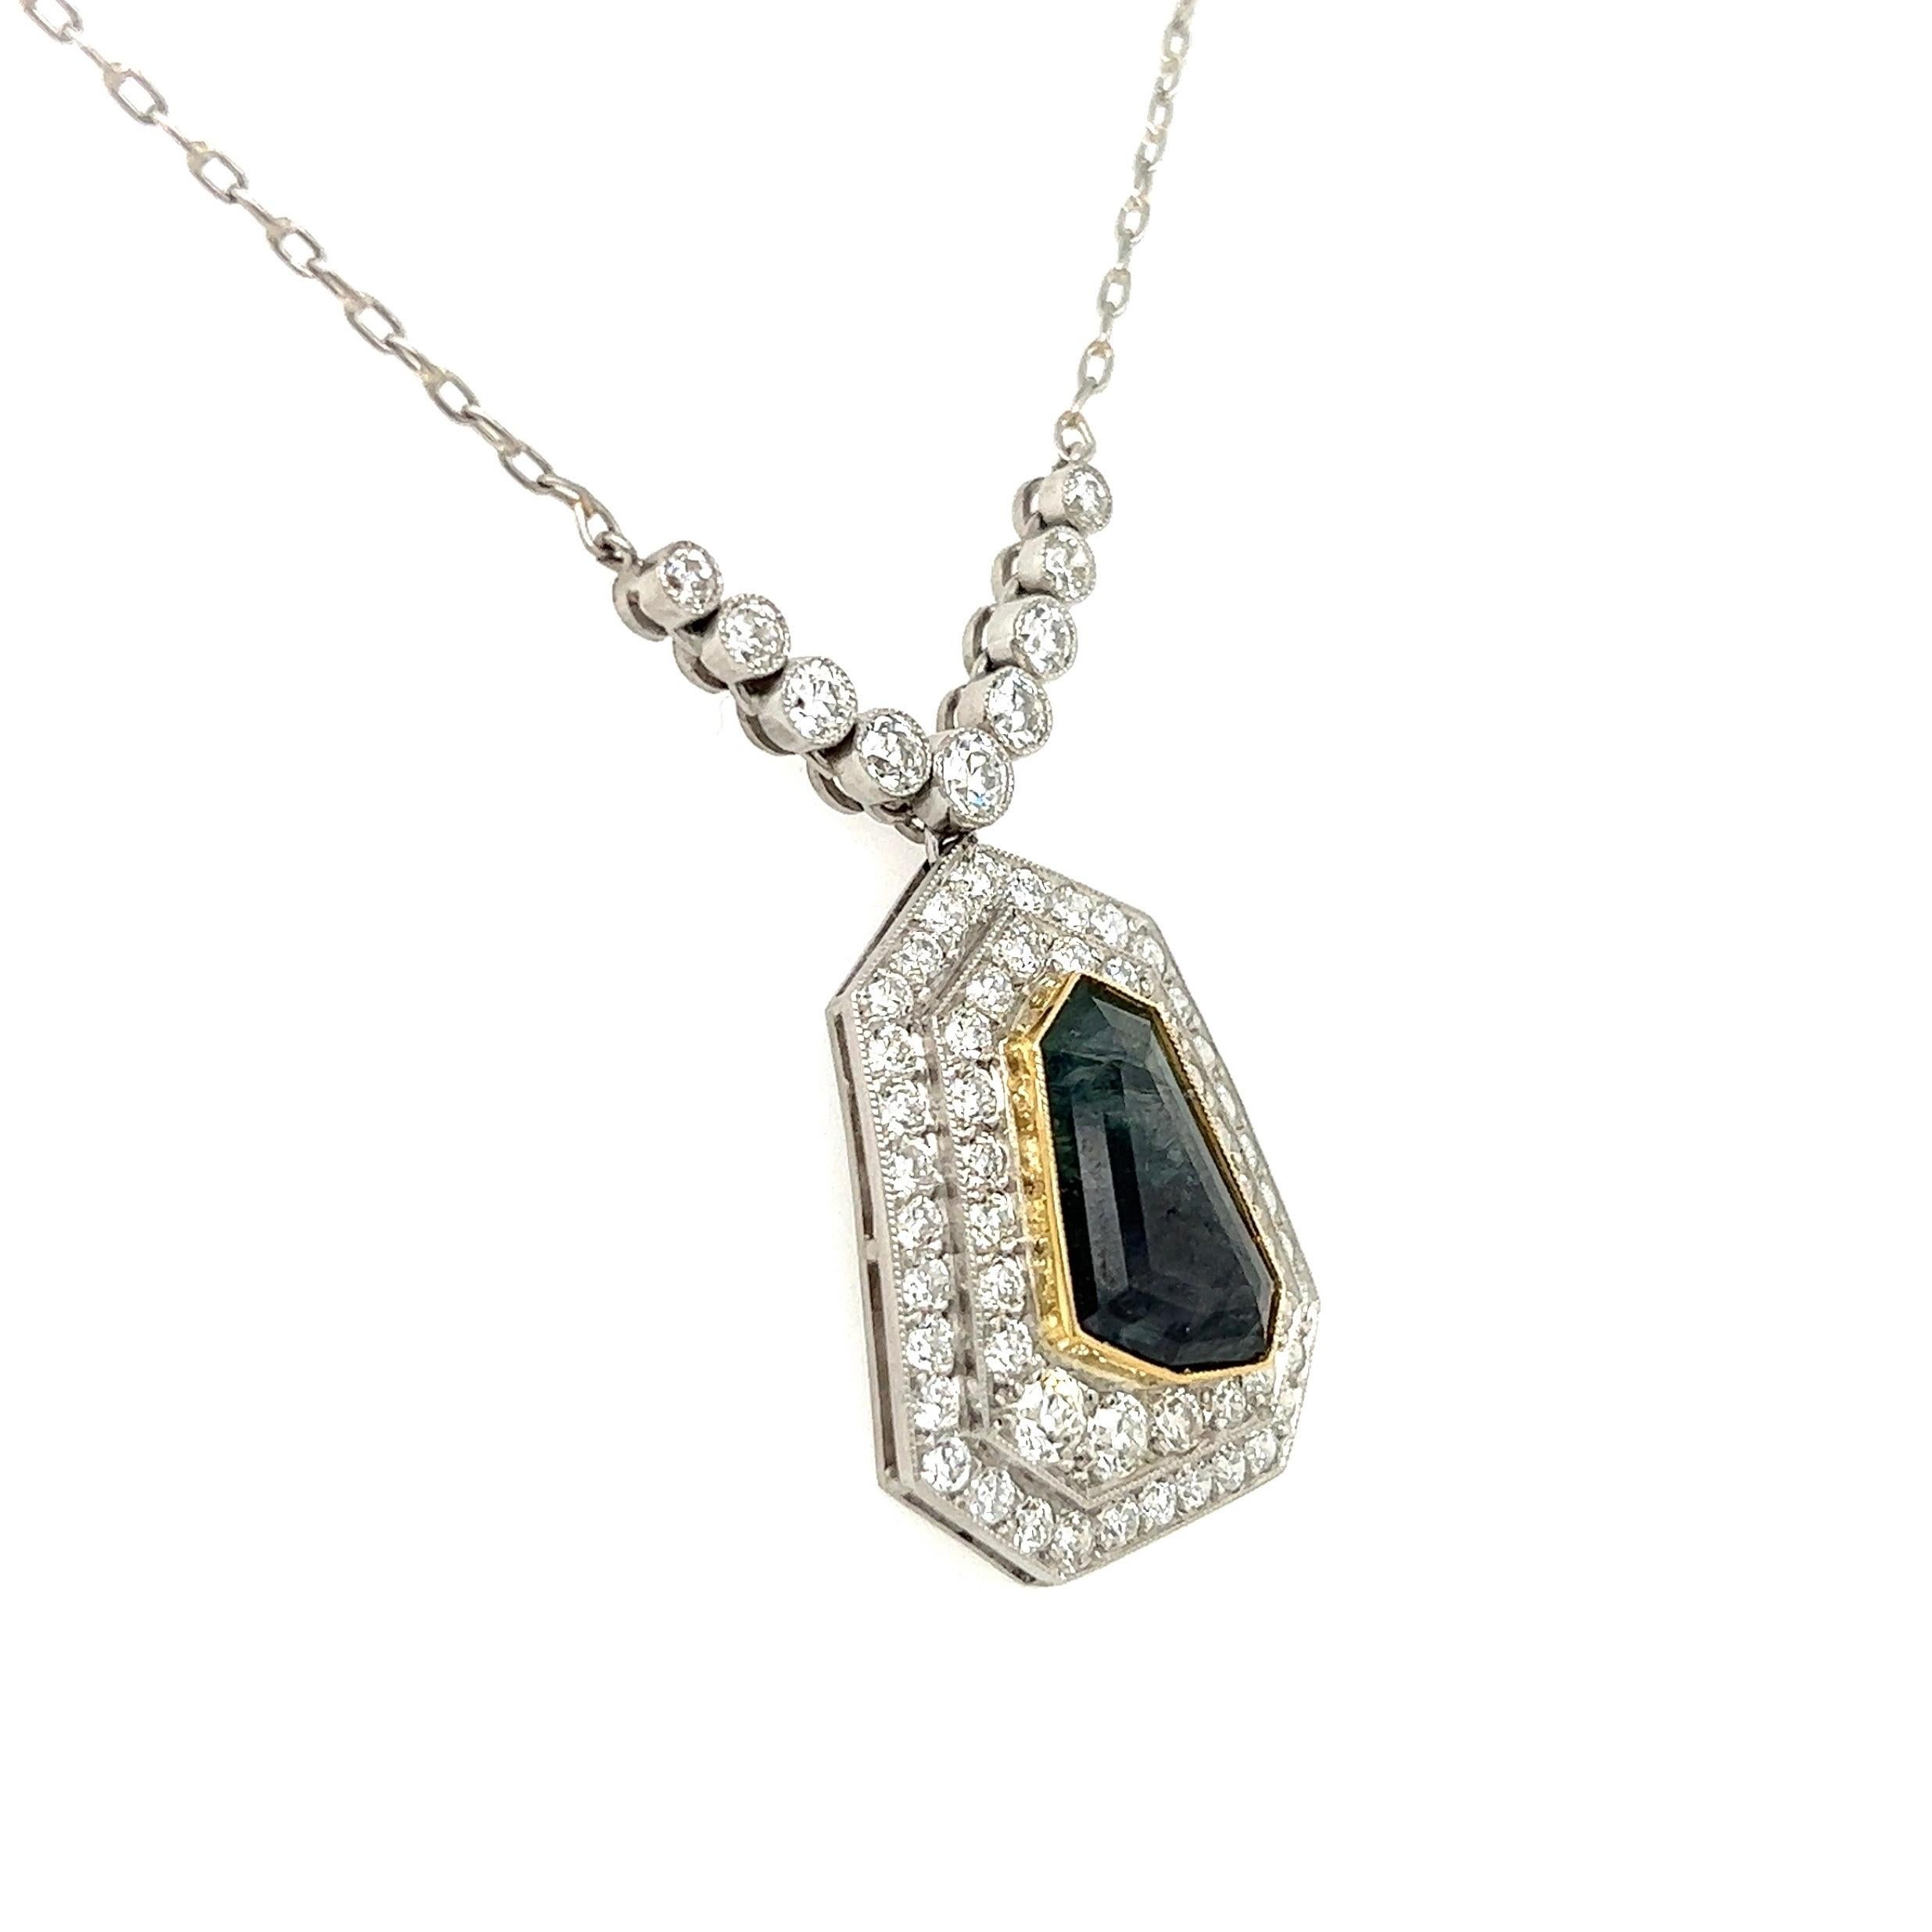 Einfach schön! Elegante und fein detaillierte GIA Russische Alexandrit und Diamant Anhänger Halskette, hängt an einer 19